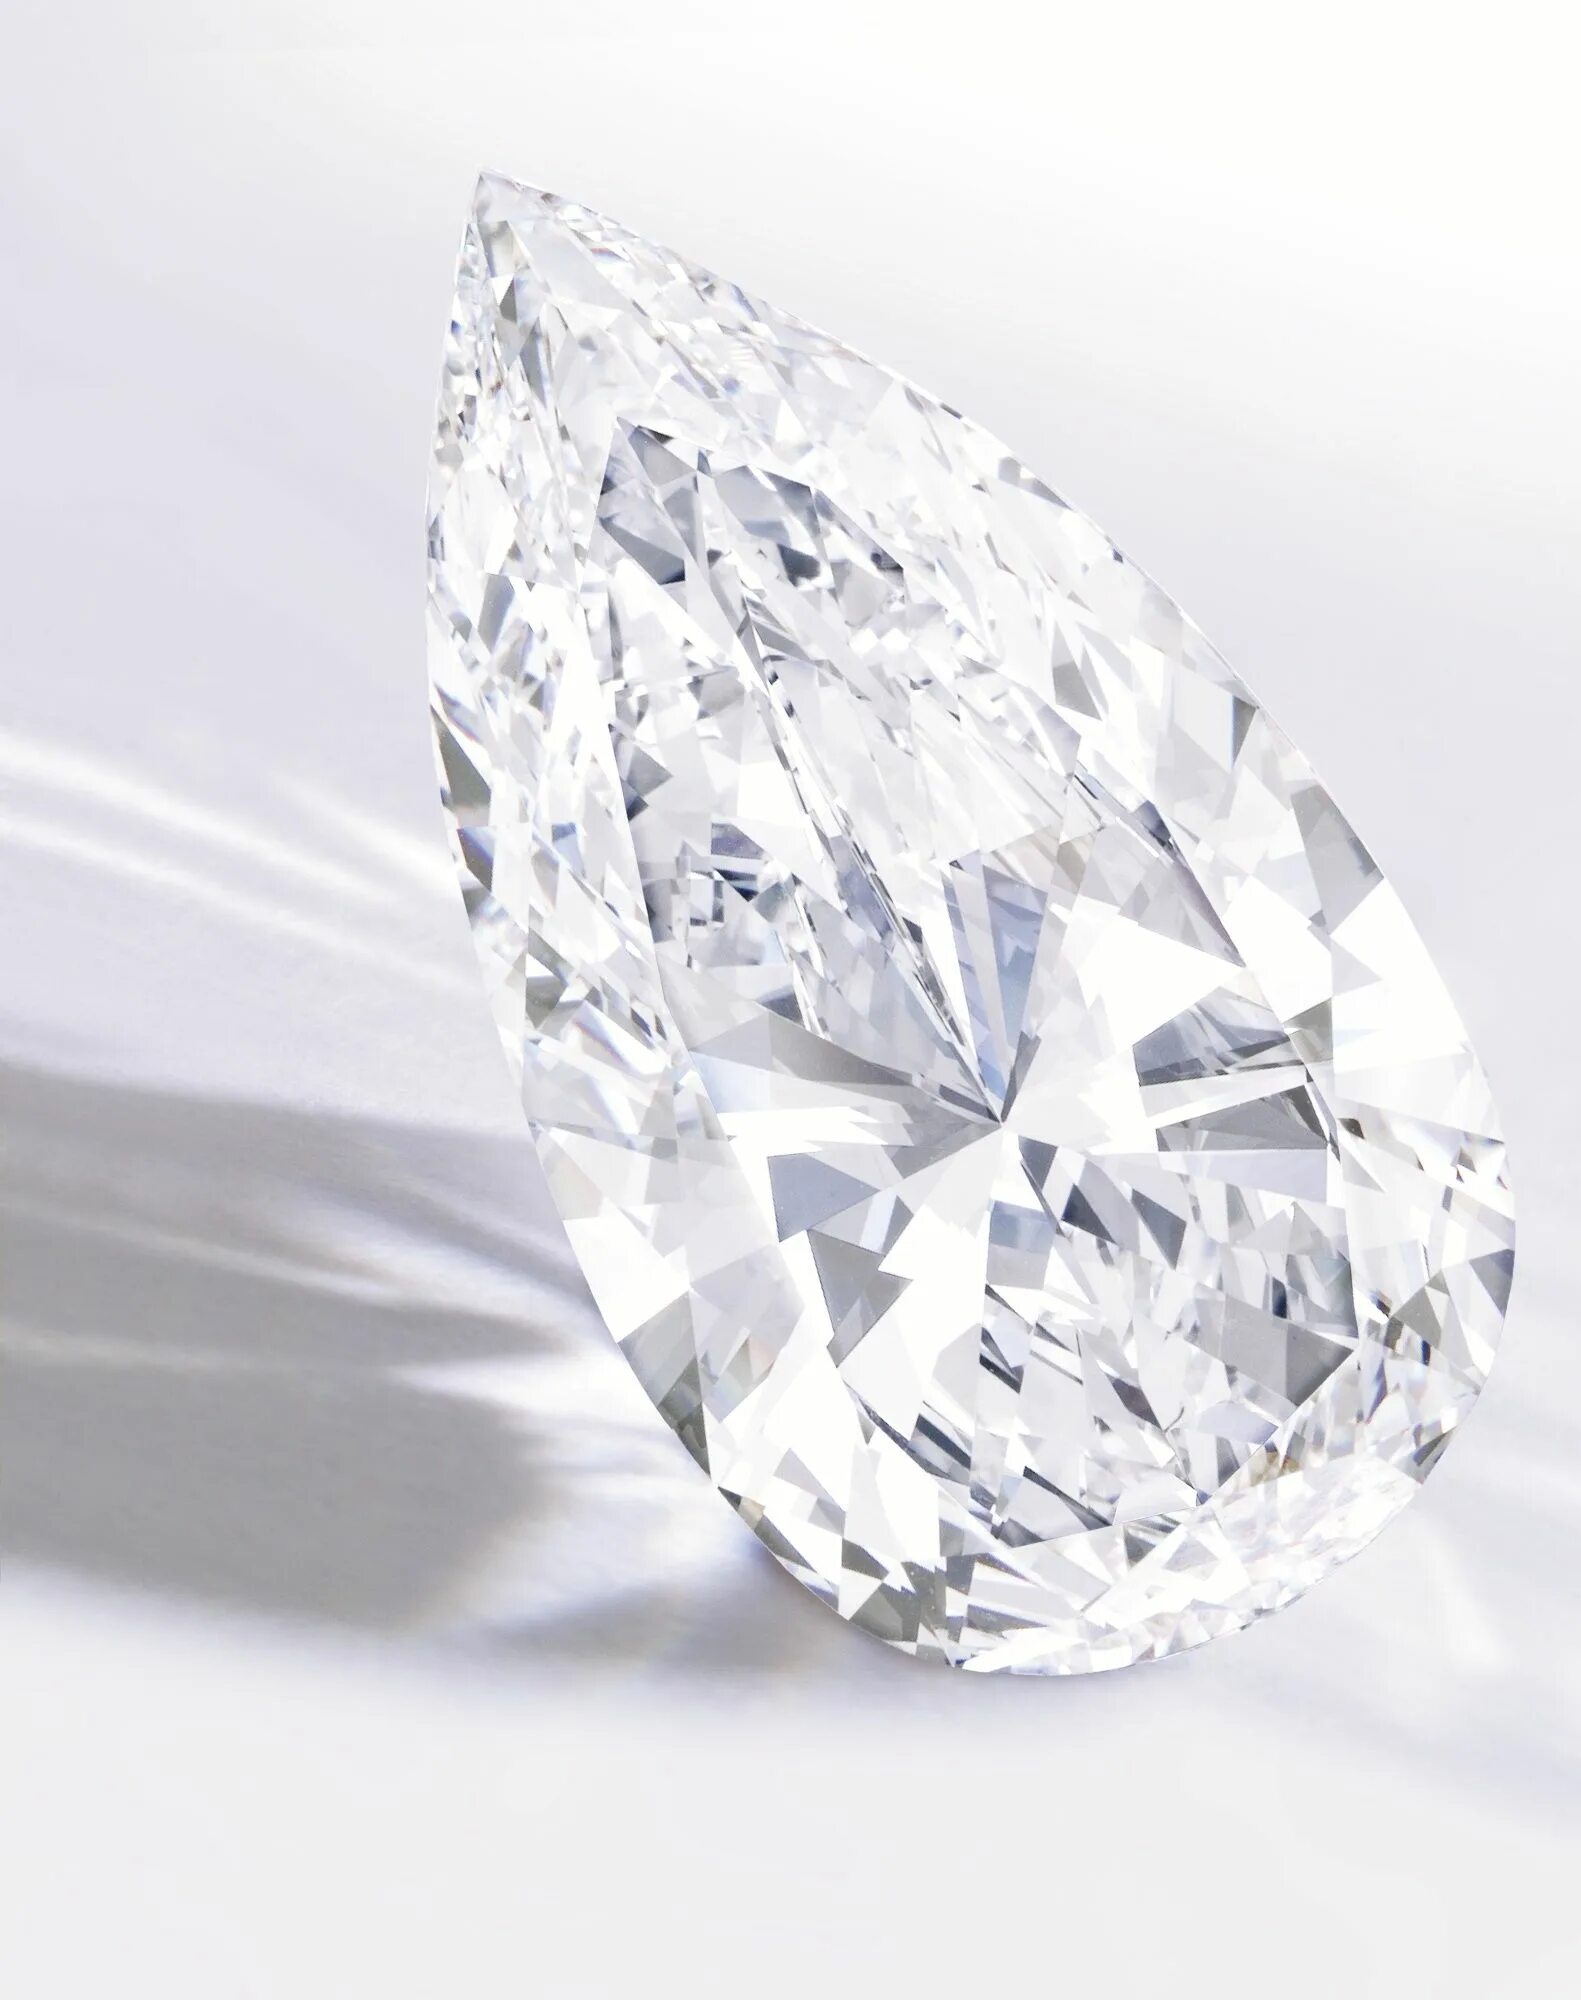 Diamond crystal. Кристалл Даймонд Вайт. Алмаз кристалически. Белый диамонд бриллианты. Белый Алмаз камень.